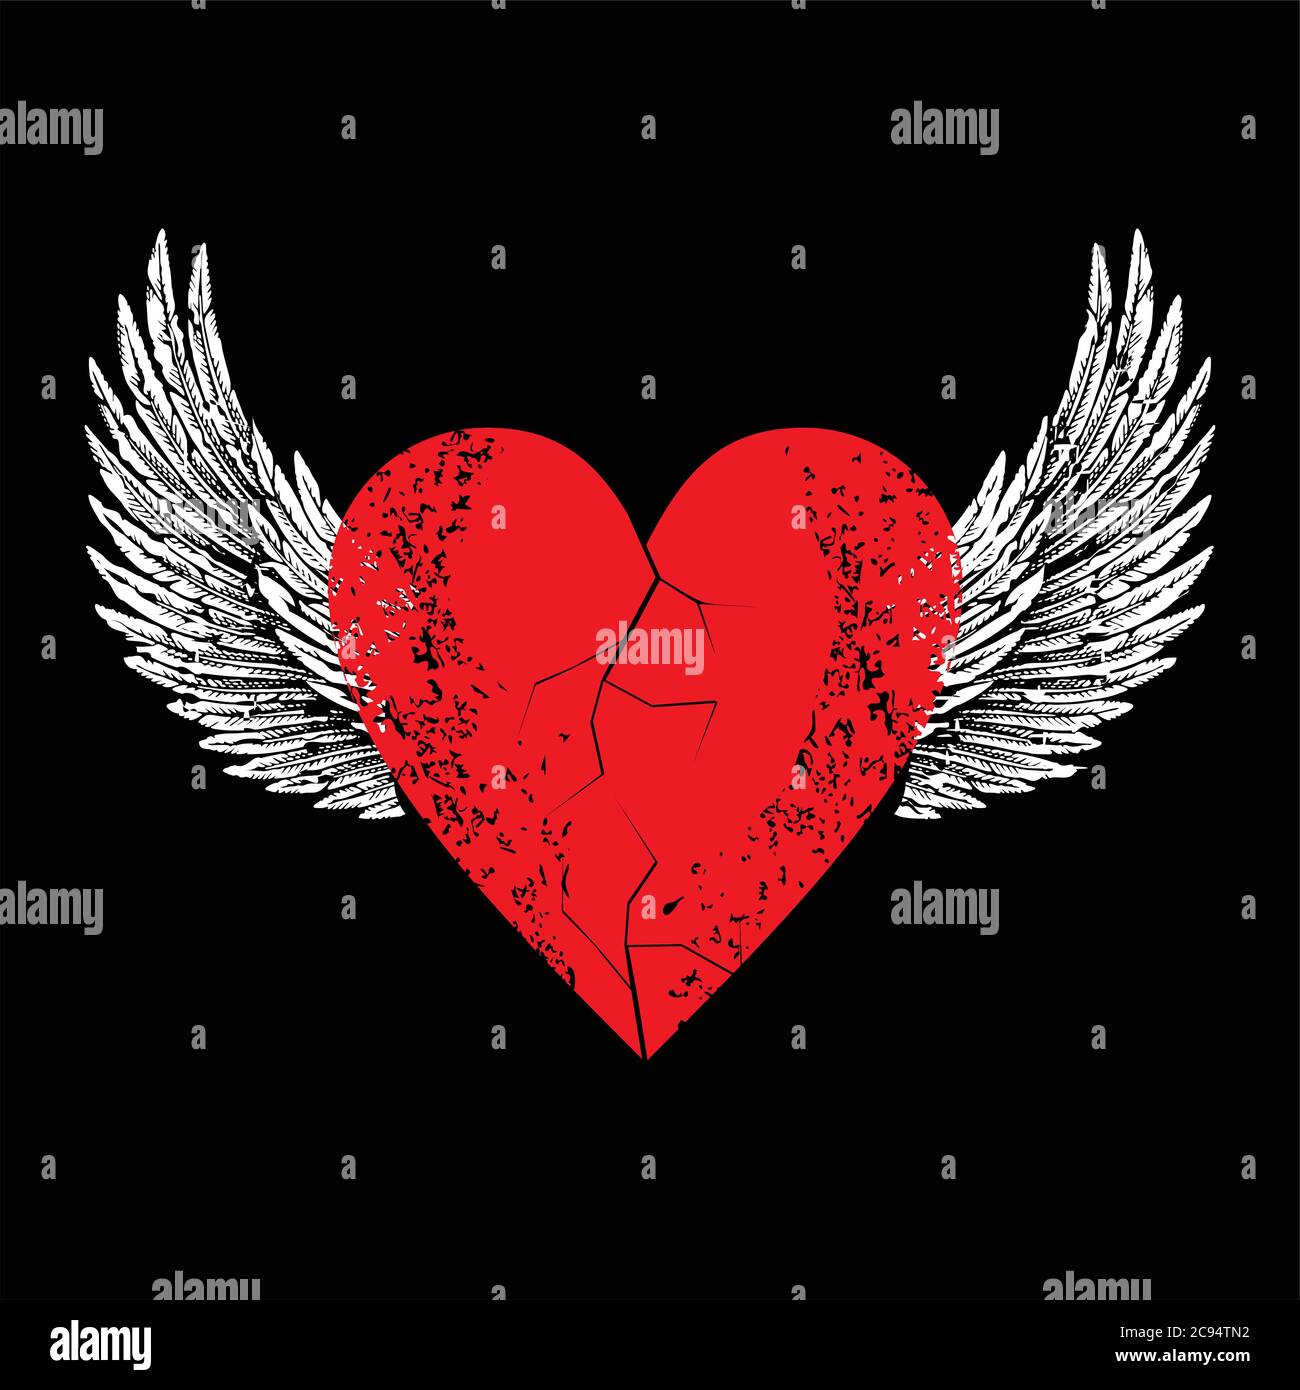 Disegno vettoriale per t-shirt di cuore rosso con ali bianche isolate su nero. Illustrazione di un cuore rotto che vola. Illustrazione Vettoriale